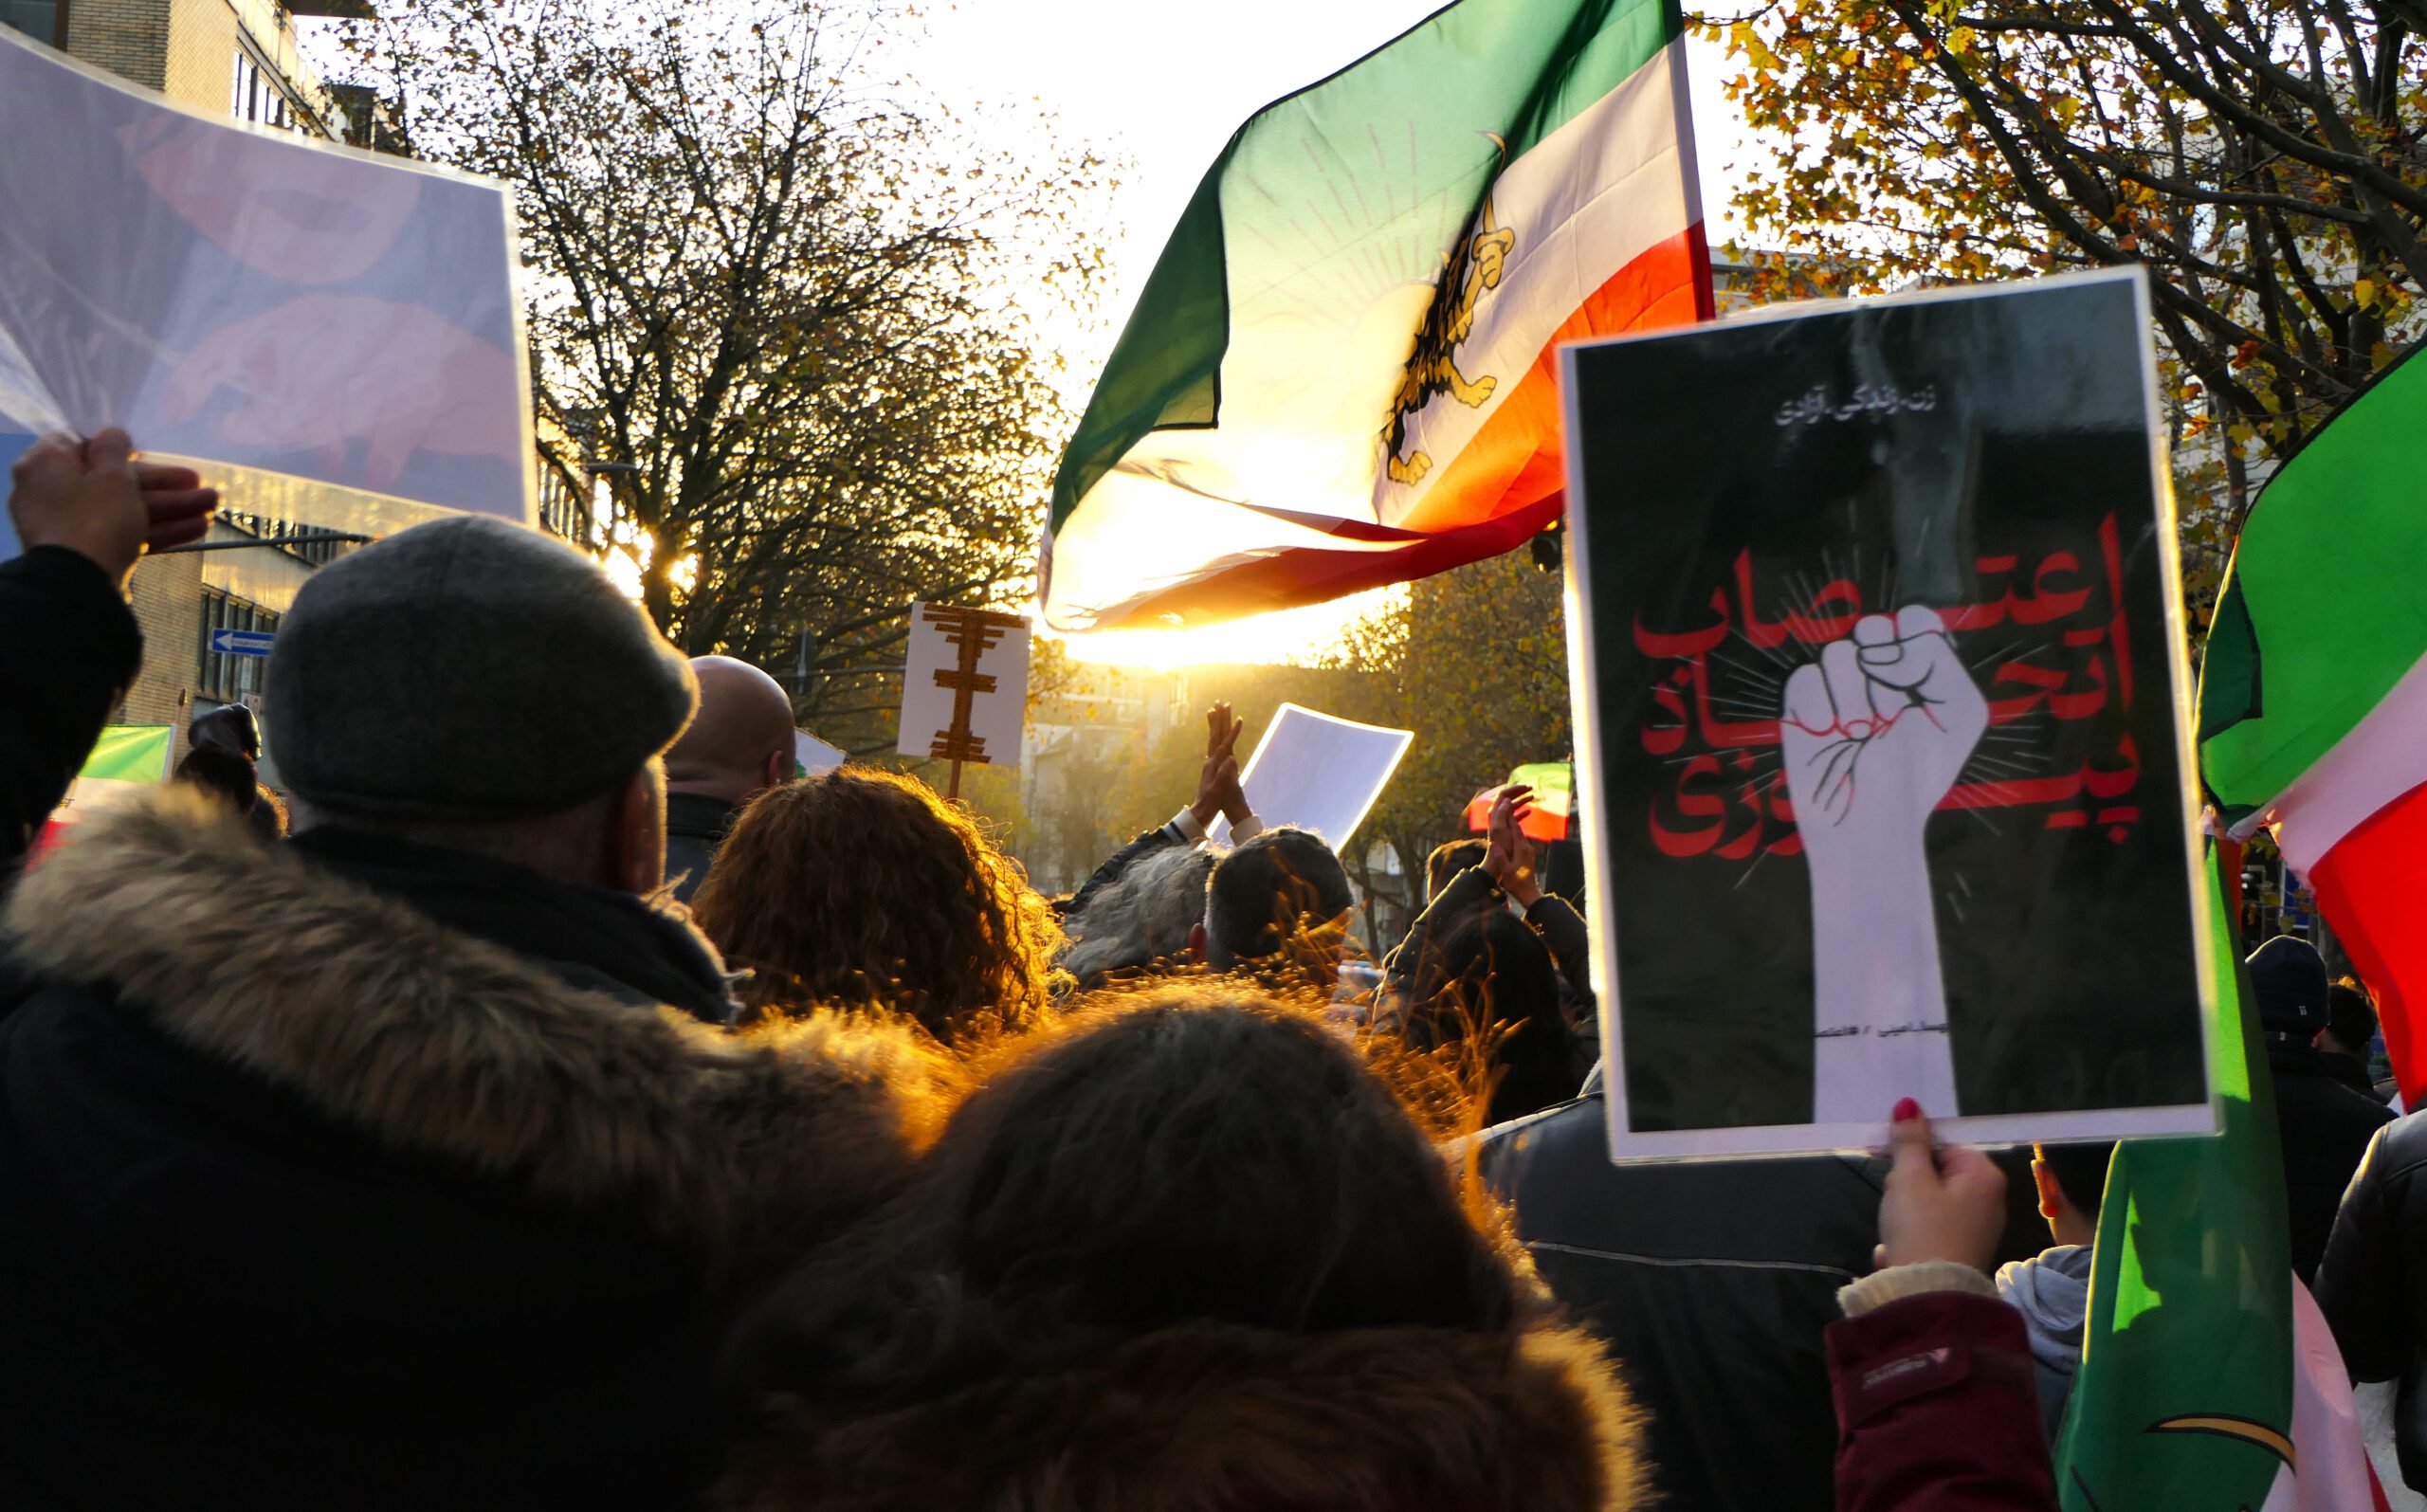 “Das iranische Regime ist unser IS” – Interview mit einem deutsch-iranischen Aktivisten aus Aachen